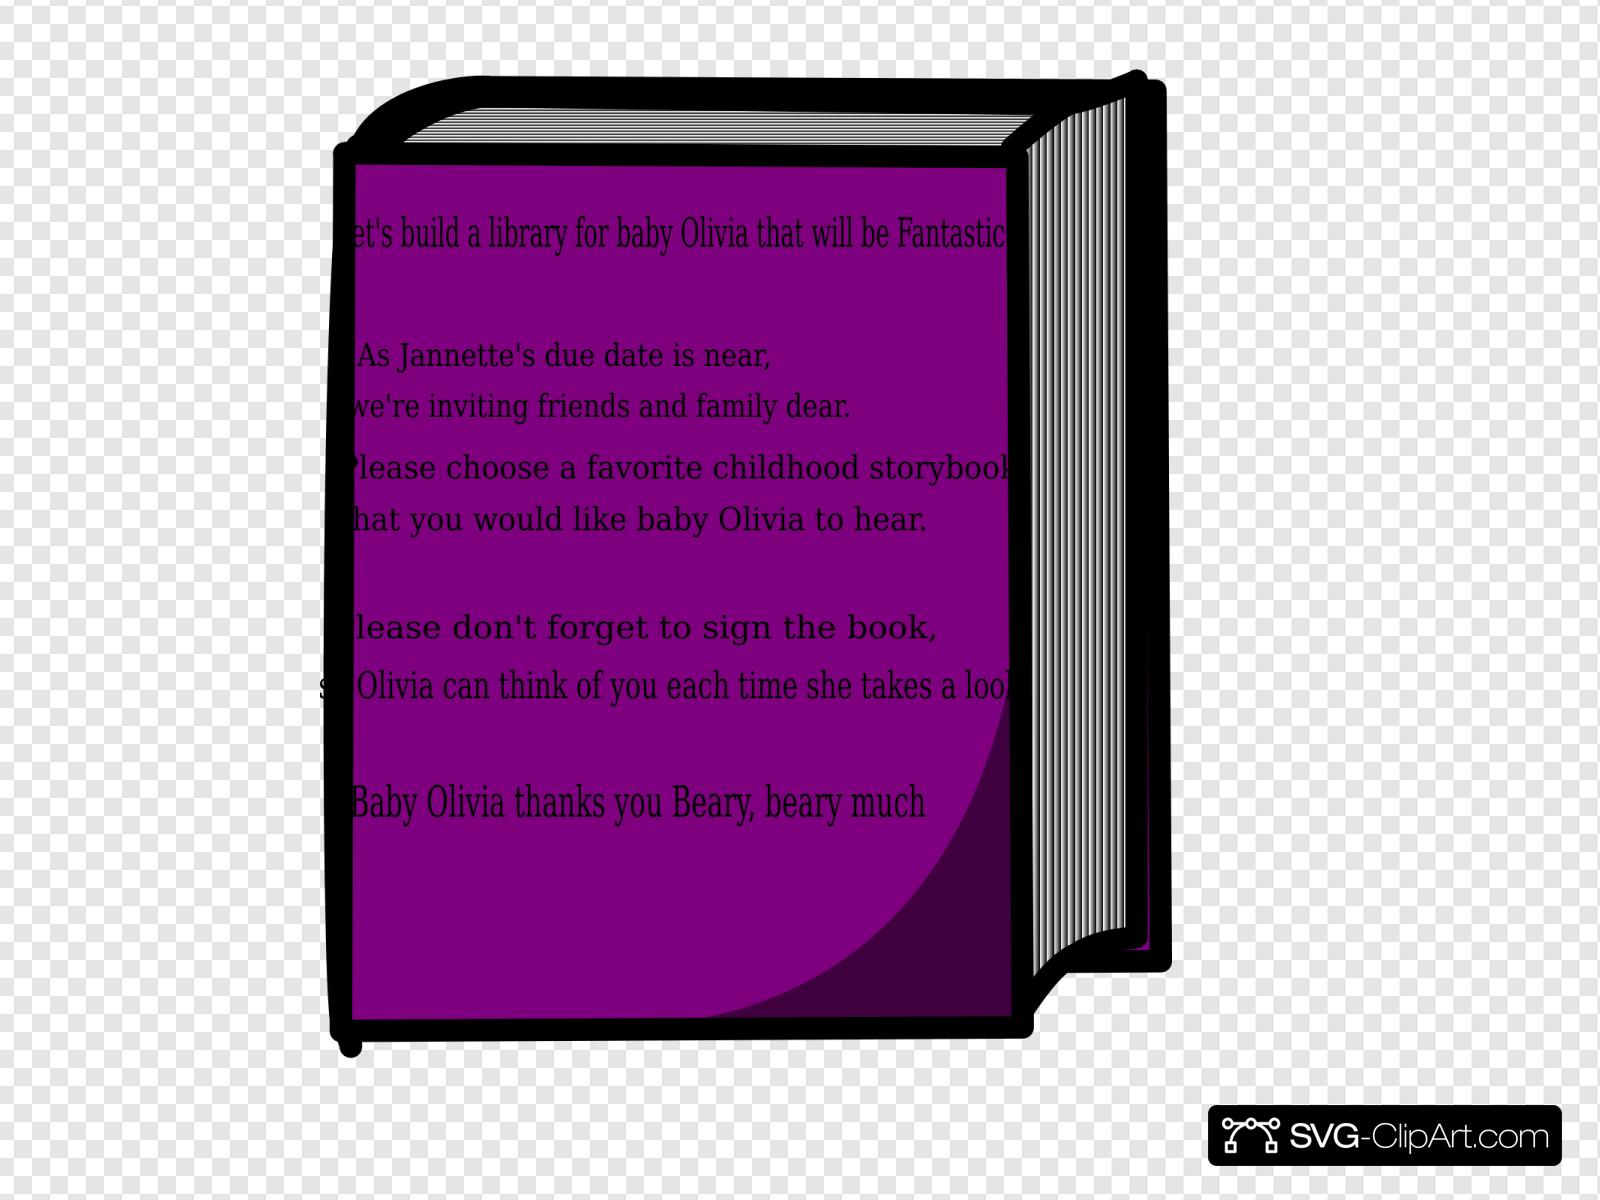 Olivia Book Clip art, Icon and SVG.